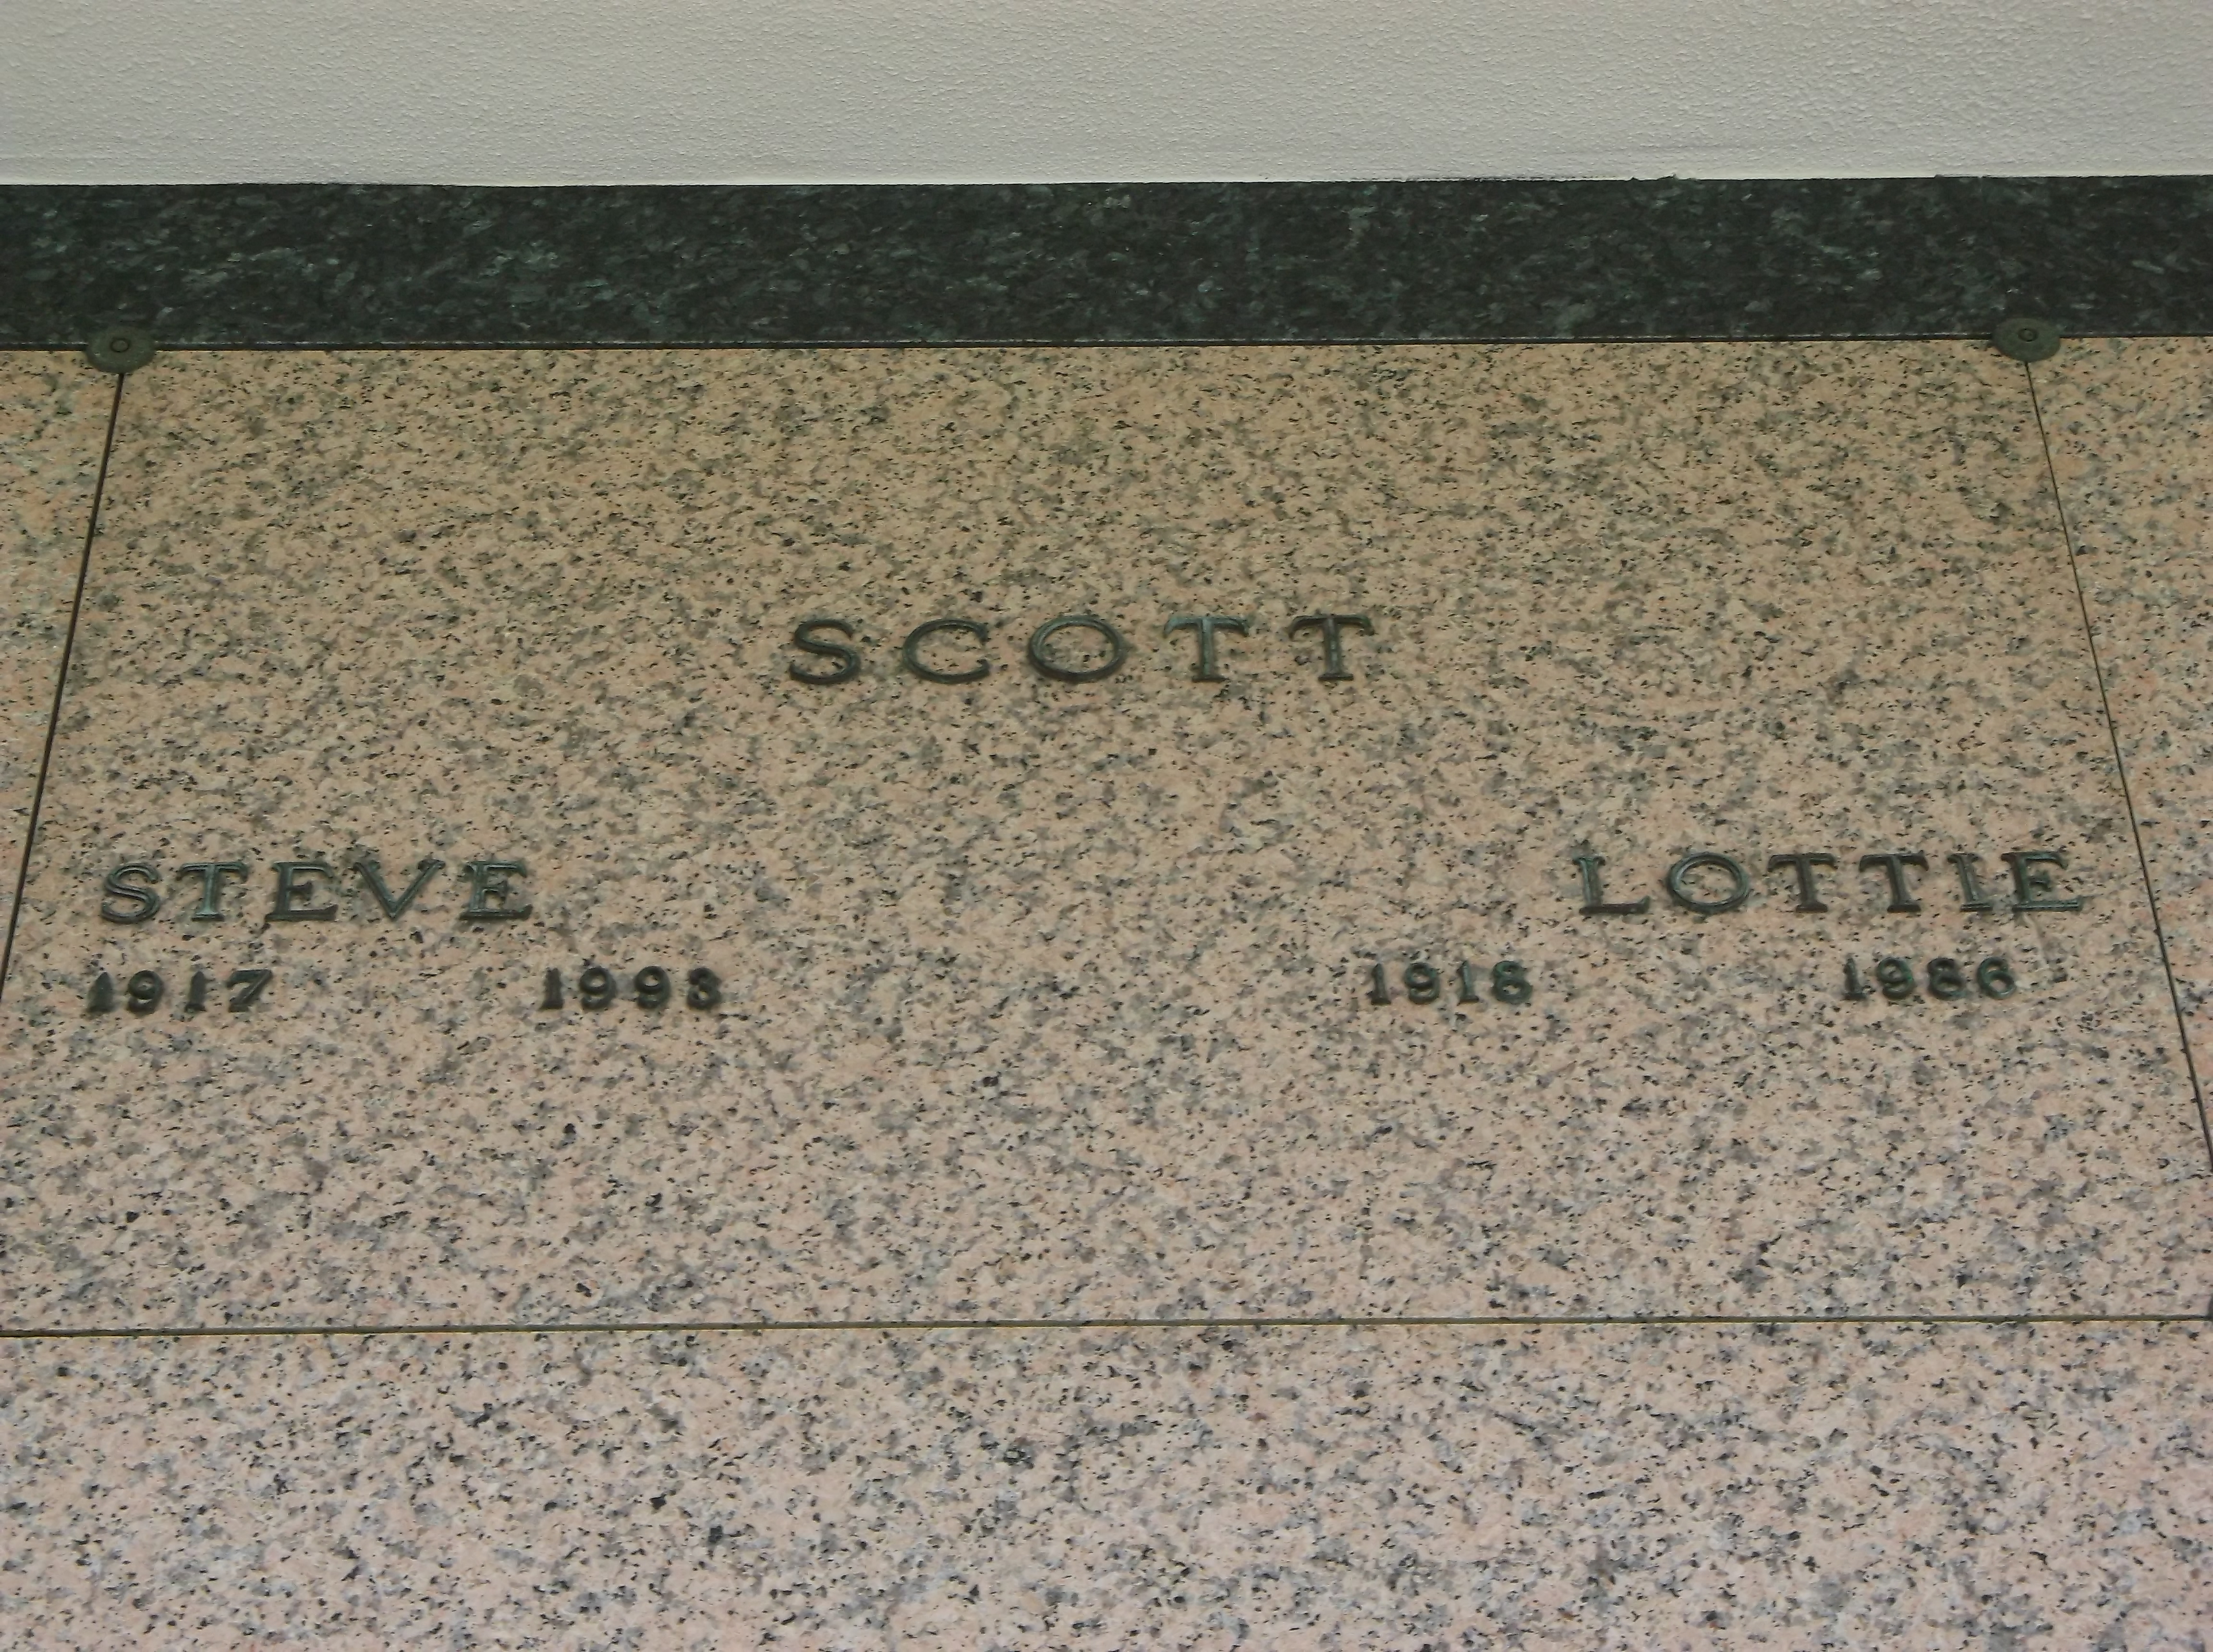 Lottie Scott